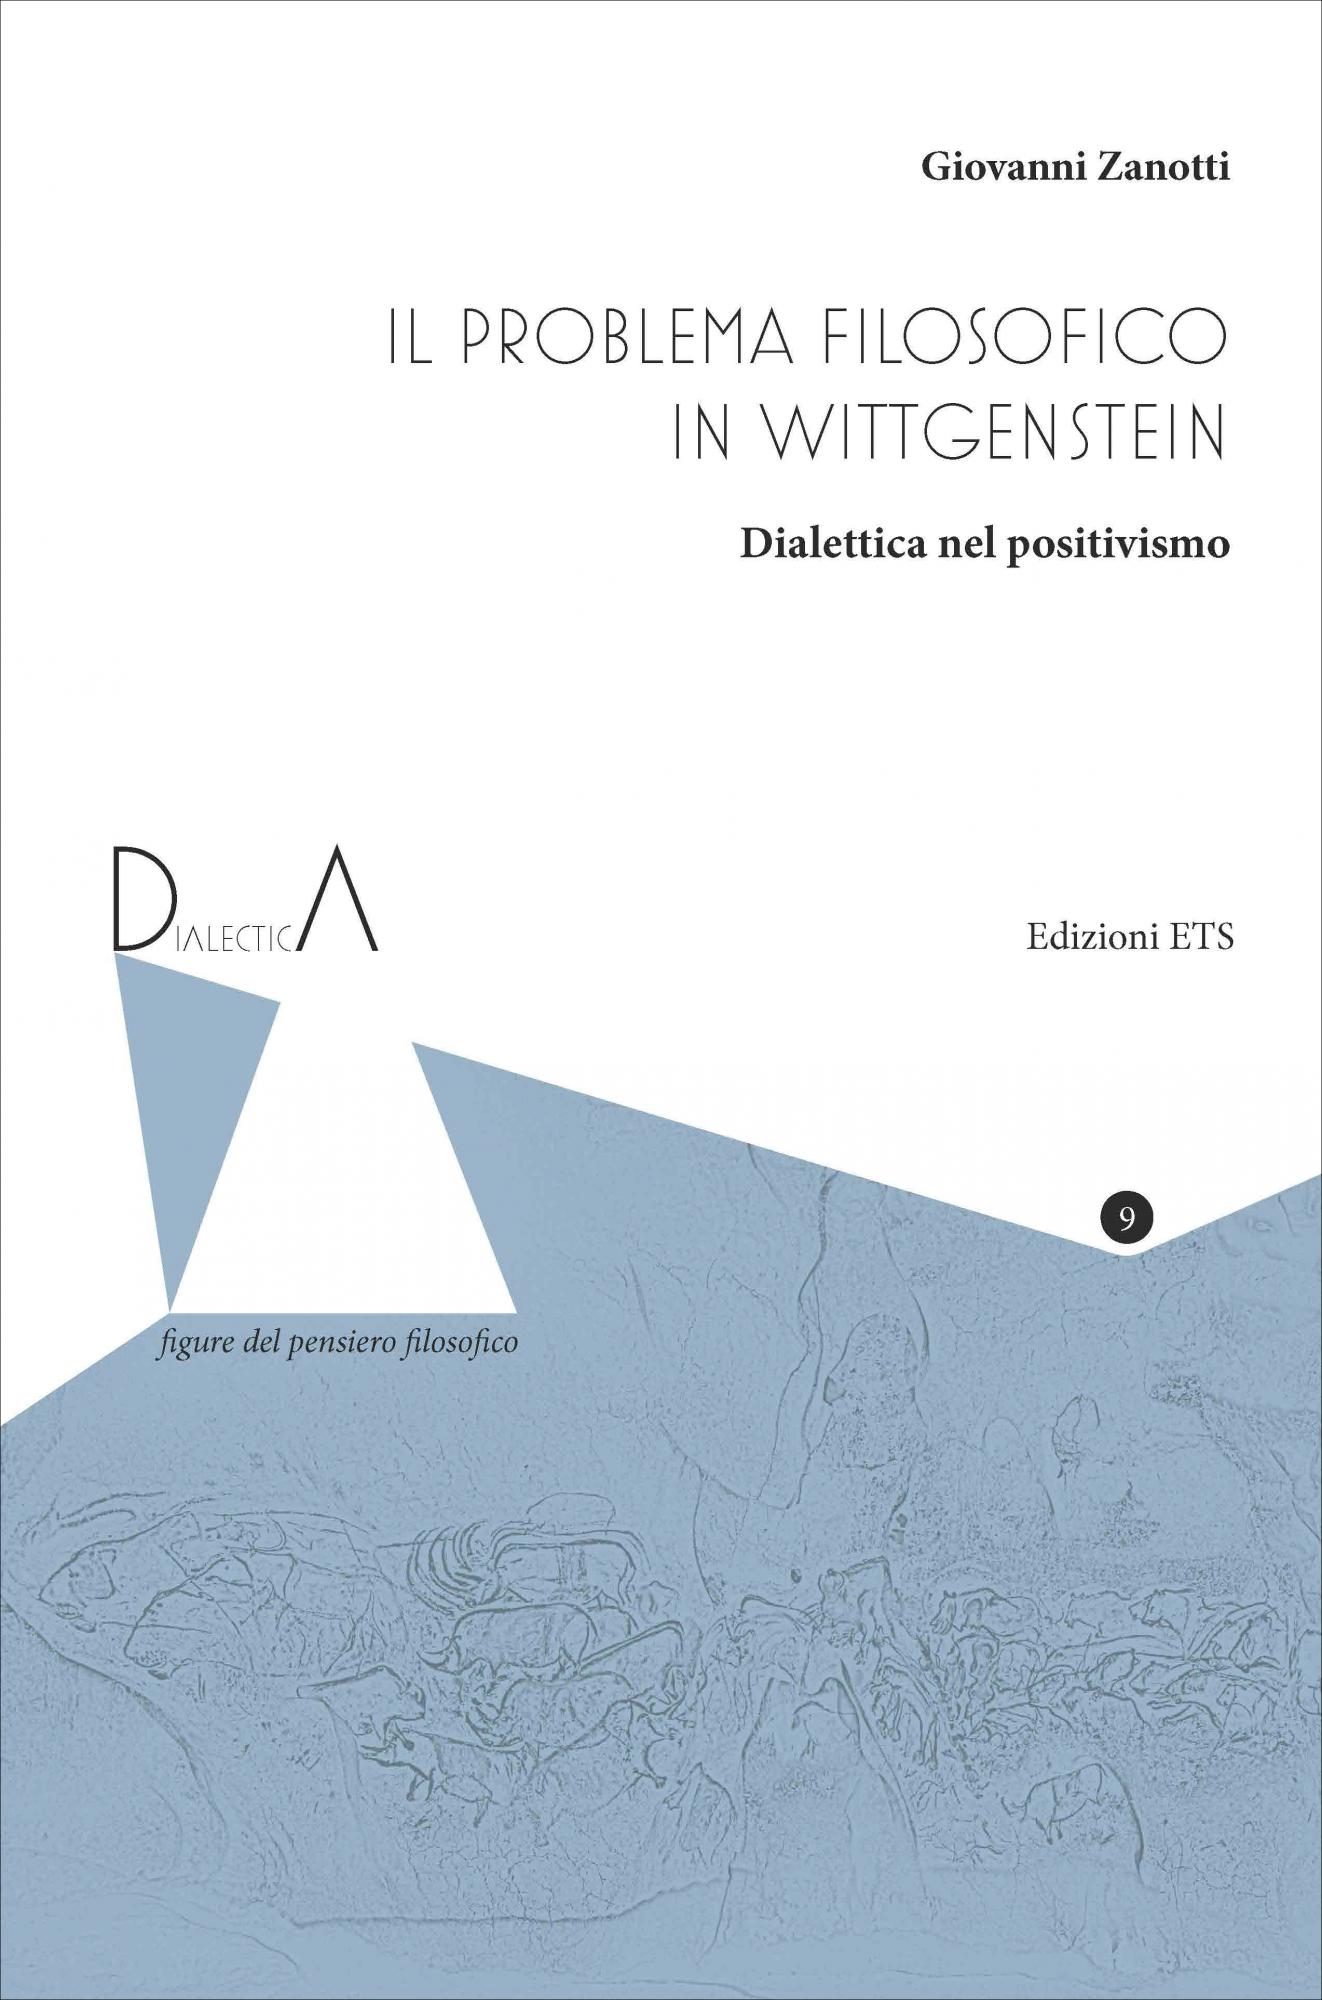 Il problema filosofico in Wittgenstein.Dialettica nel positivismo